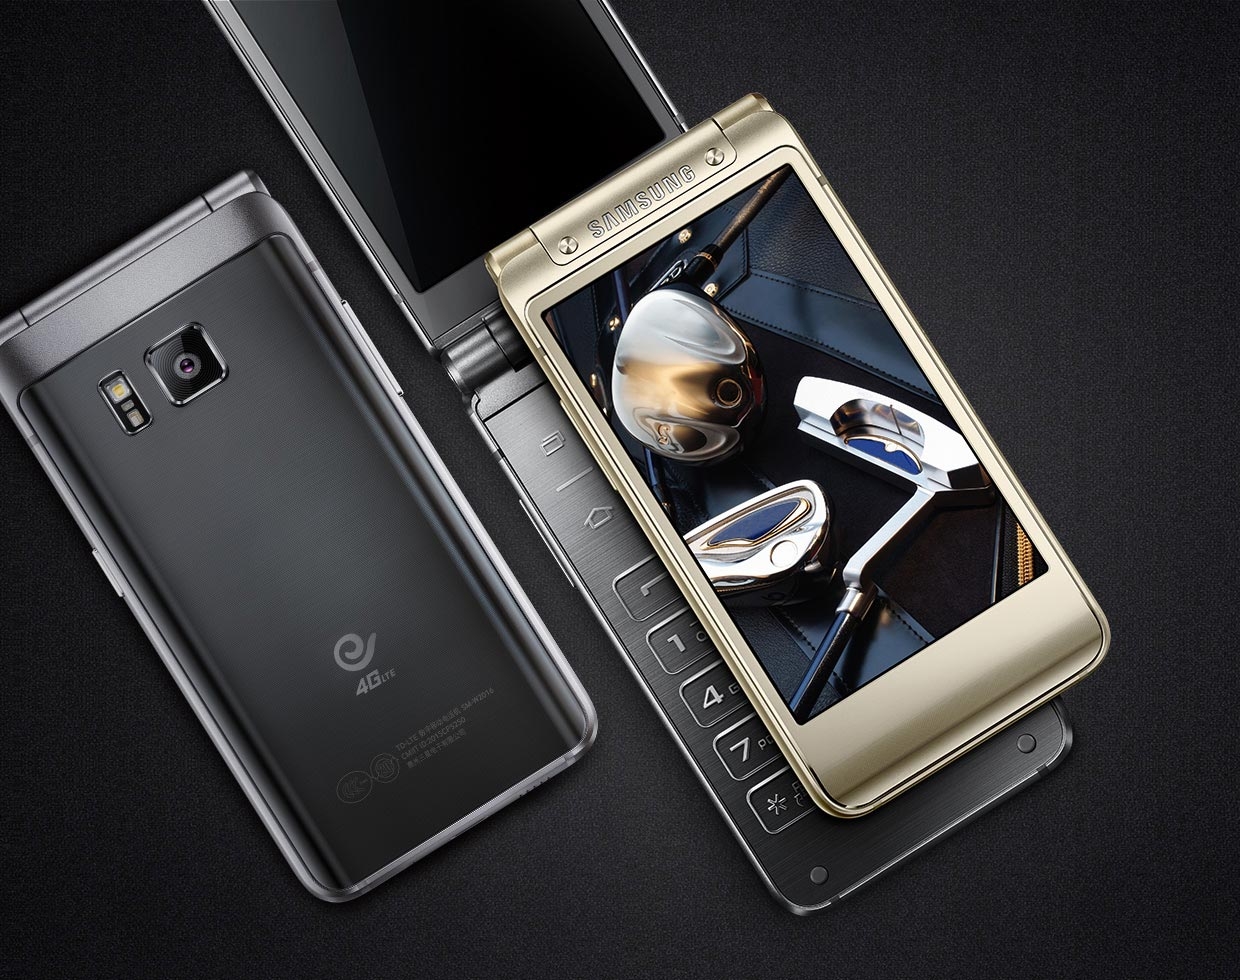 Samsung Galaxy Golden 3/ W2016 có thiết kế tinh tế, cấu hình cao cấp